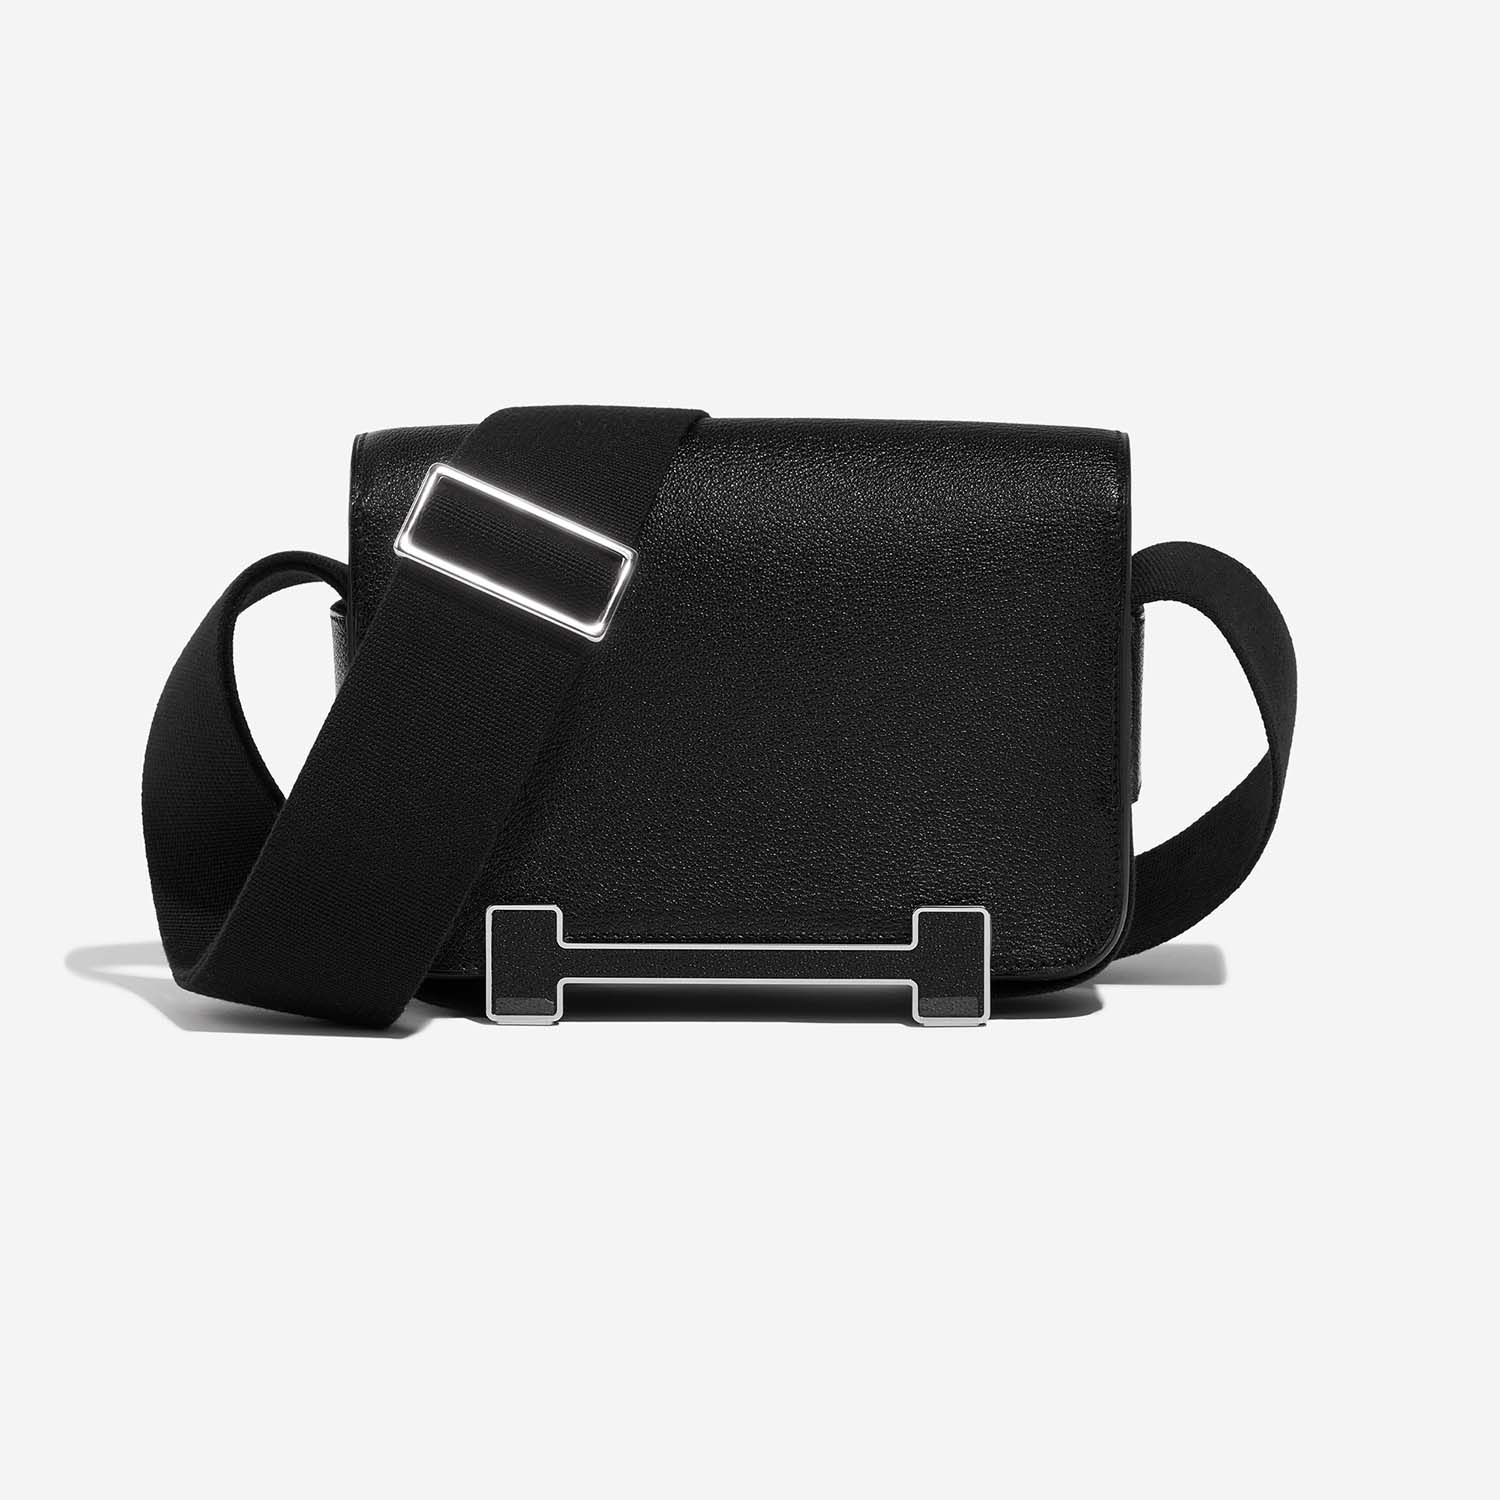 Hermès Geta oneSize Black Front | Verkaufen Sie Ihre Designer-Tasche auf Saclab.com